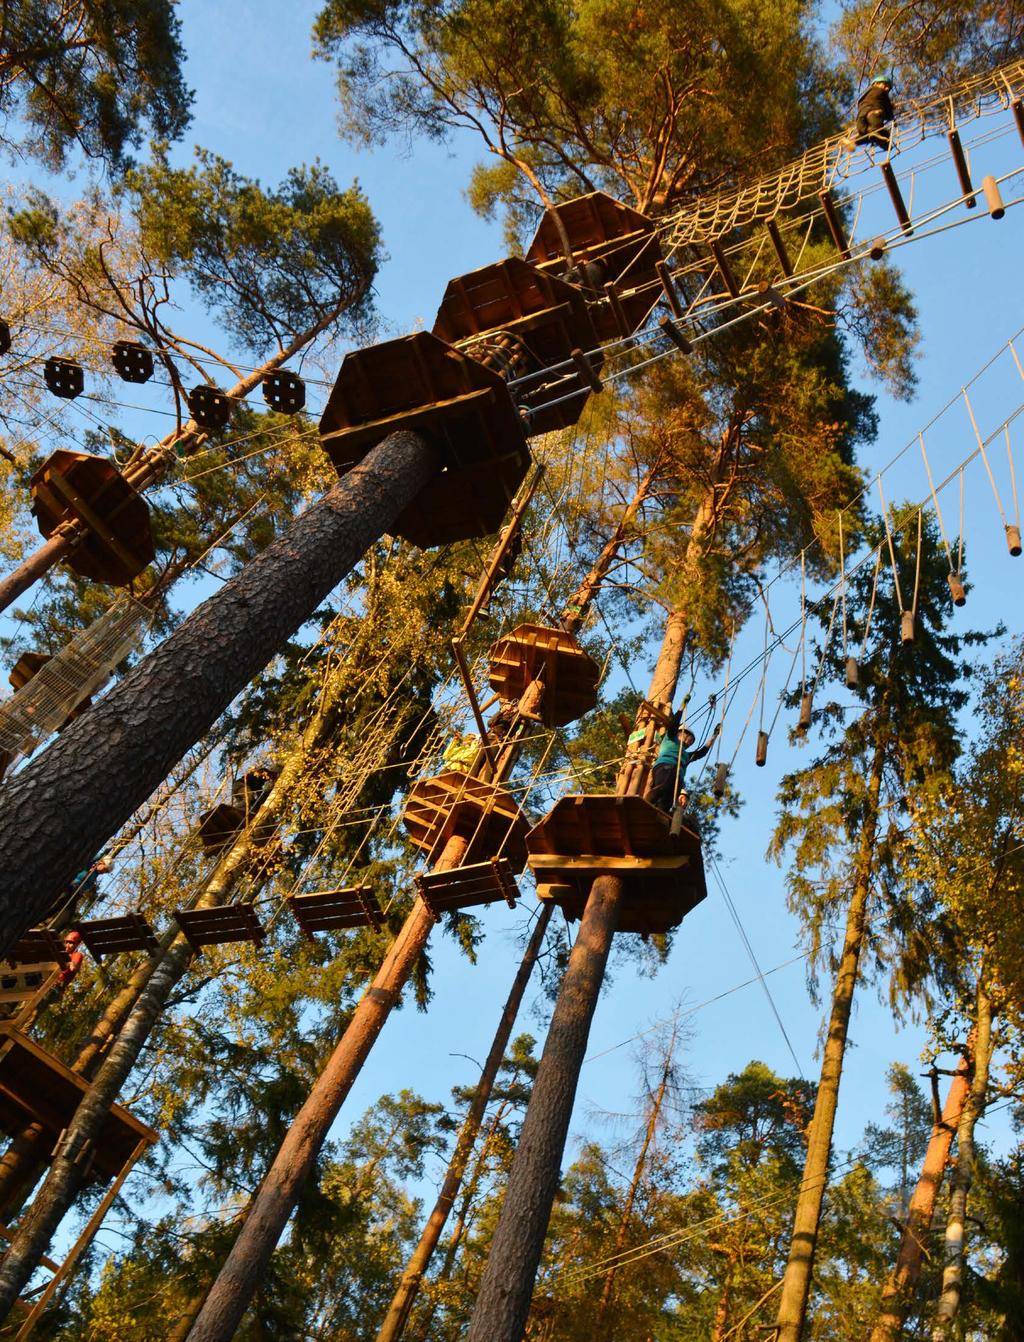 TIIMITAPAHTUMA HUIPUSSA ON KOHOTTAVA ELÄMYS Seikkailupuisto Huipussa noustaan kiipeily valjaiden varassa 4 18 metrin korkeuteen mäntymetsän latvuksiin.